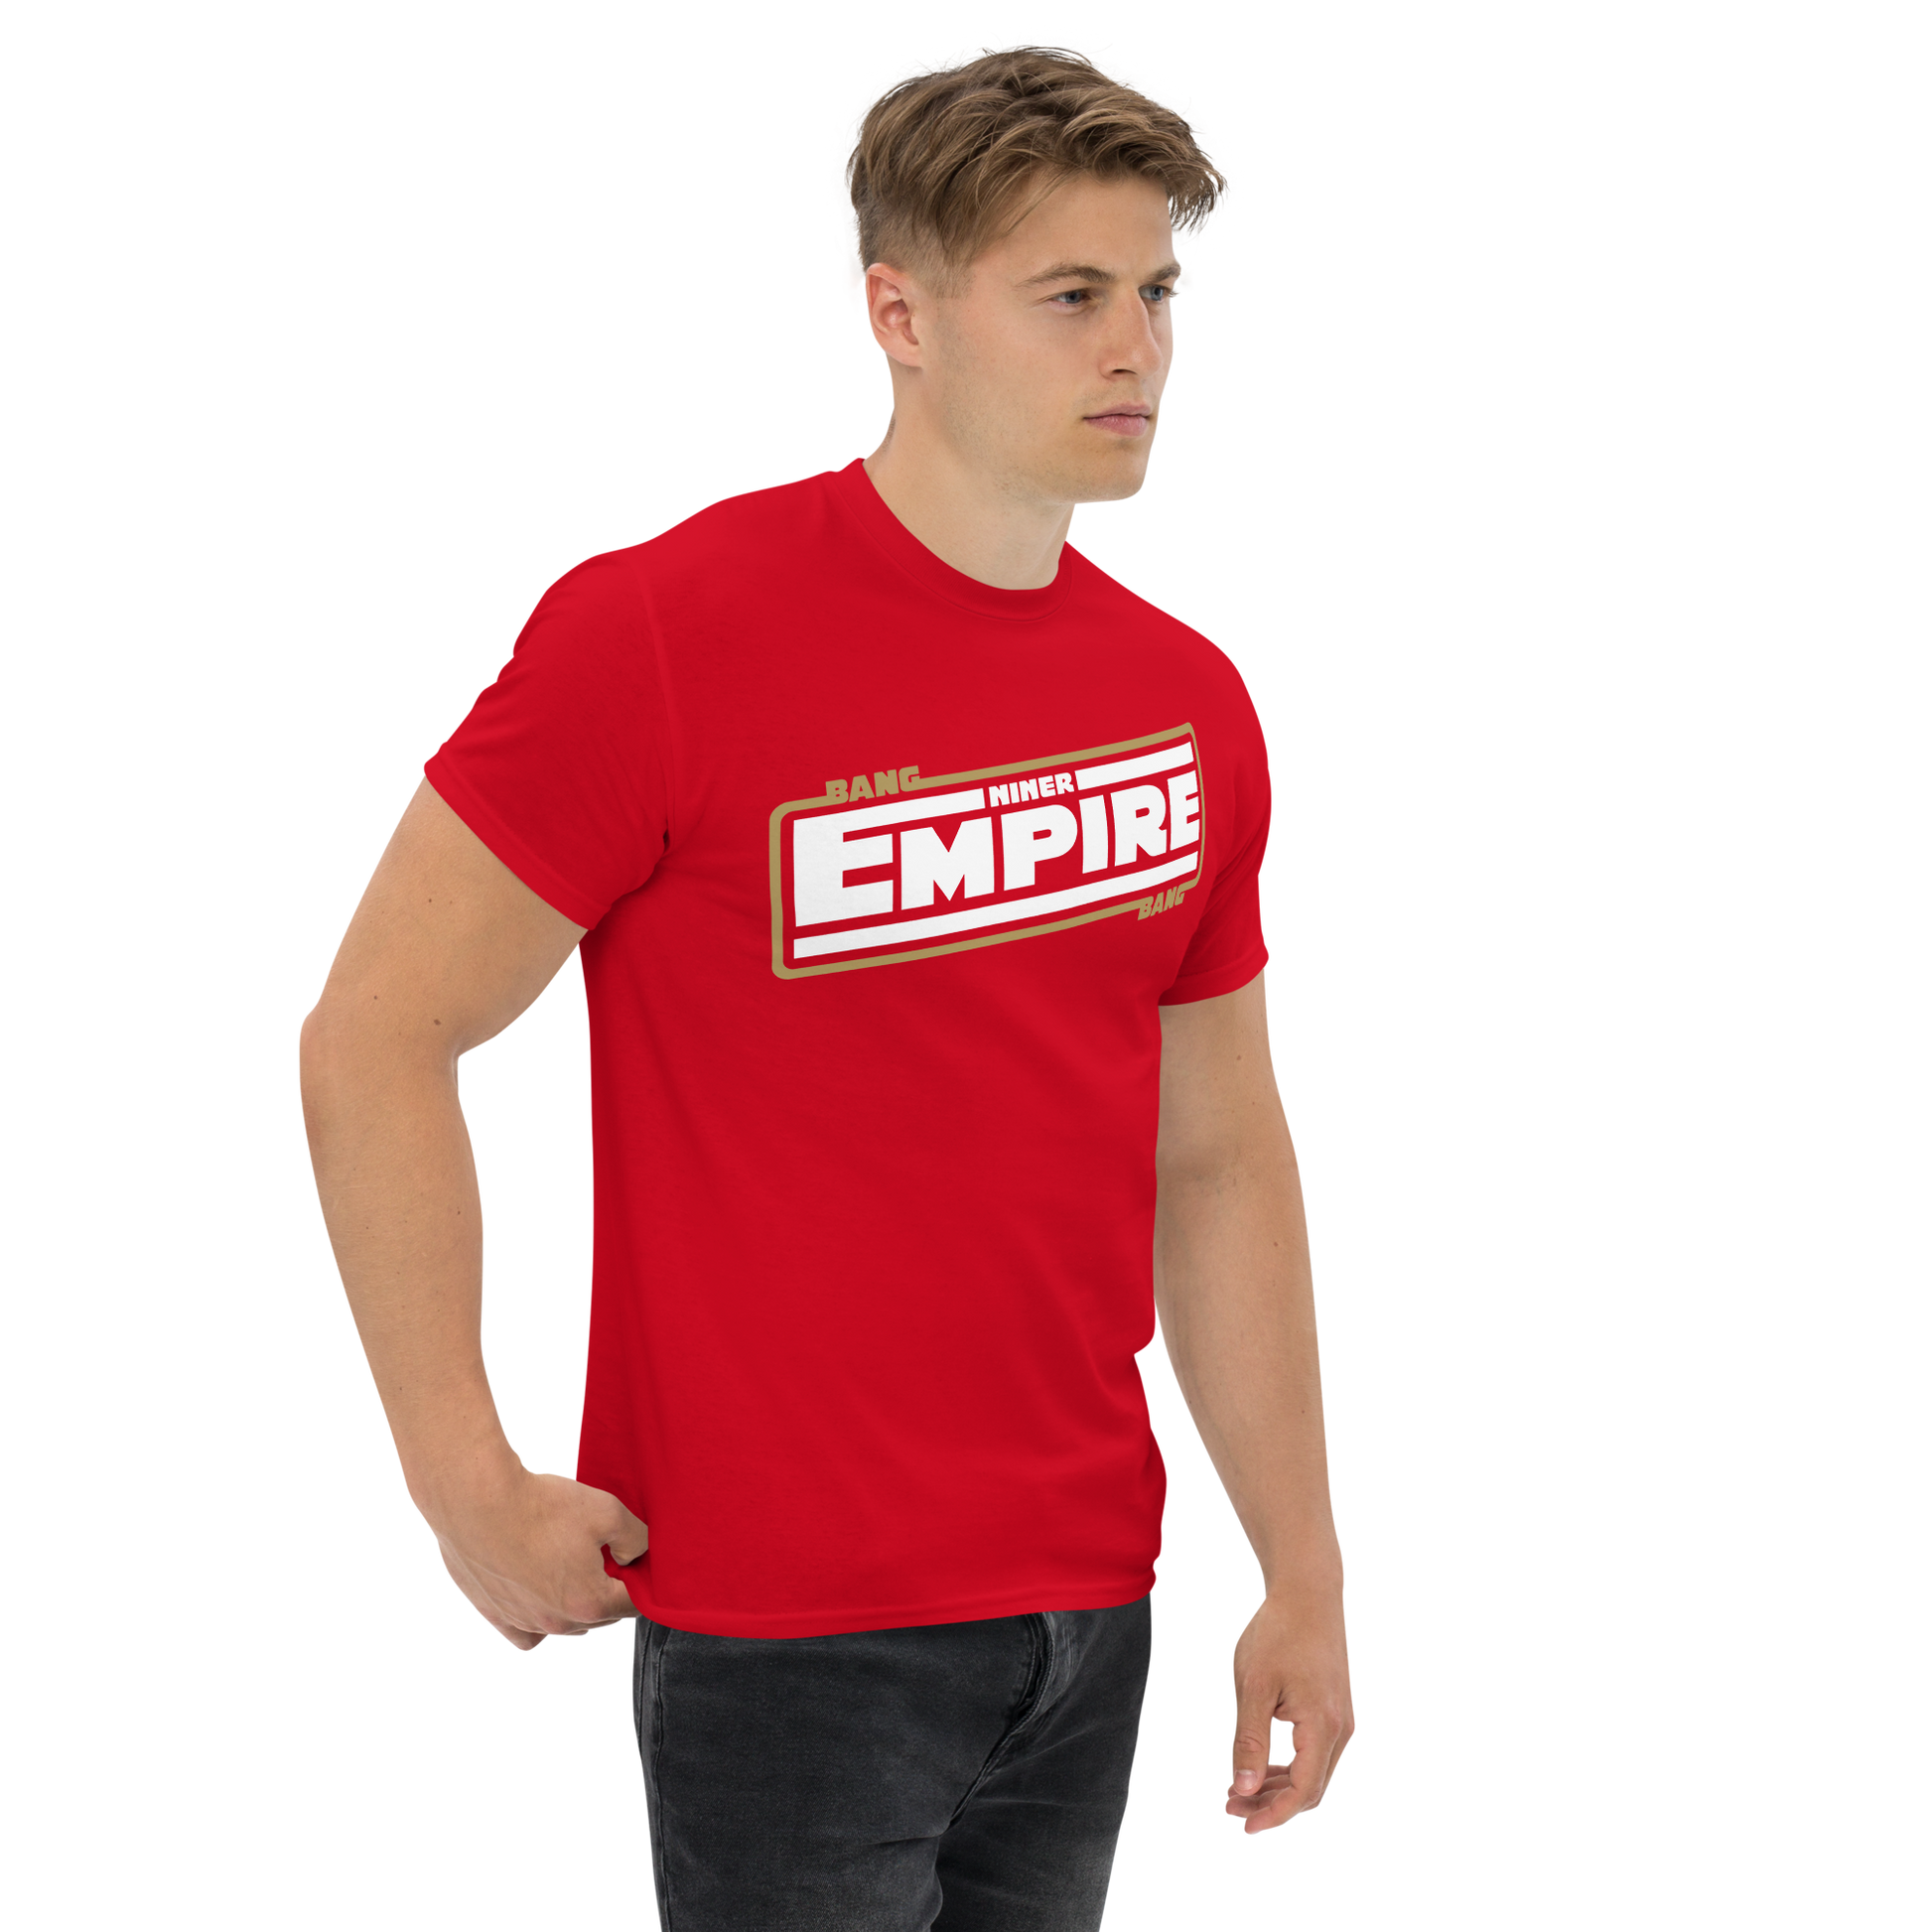 49ers empire shirt